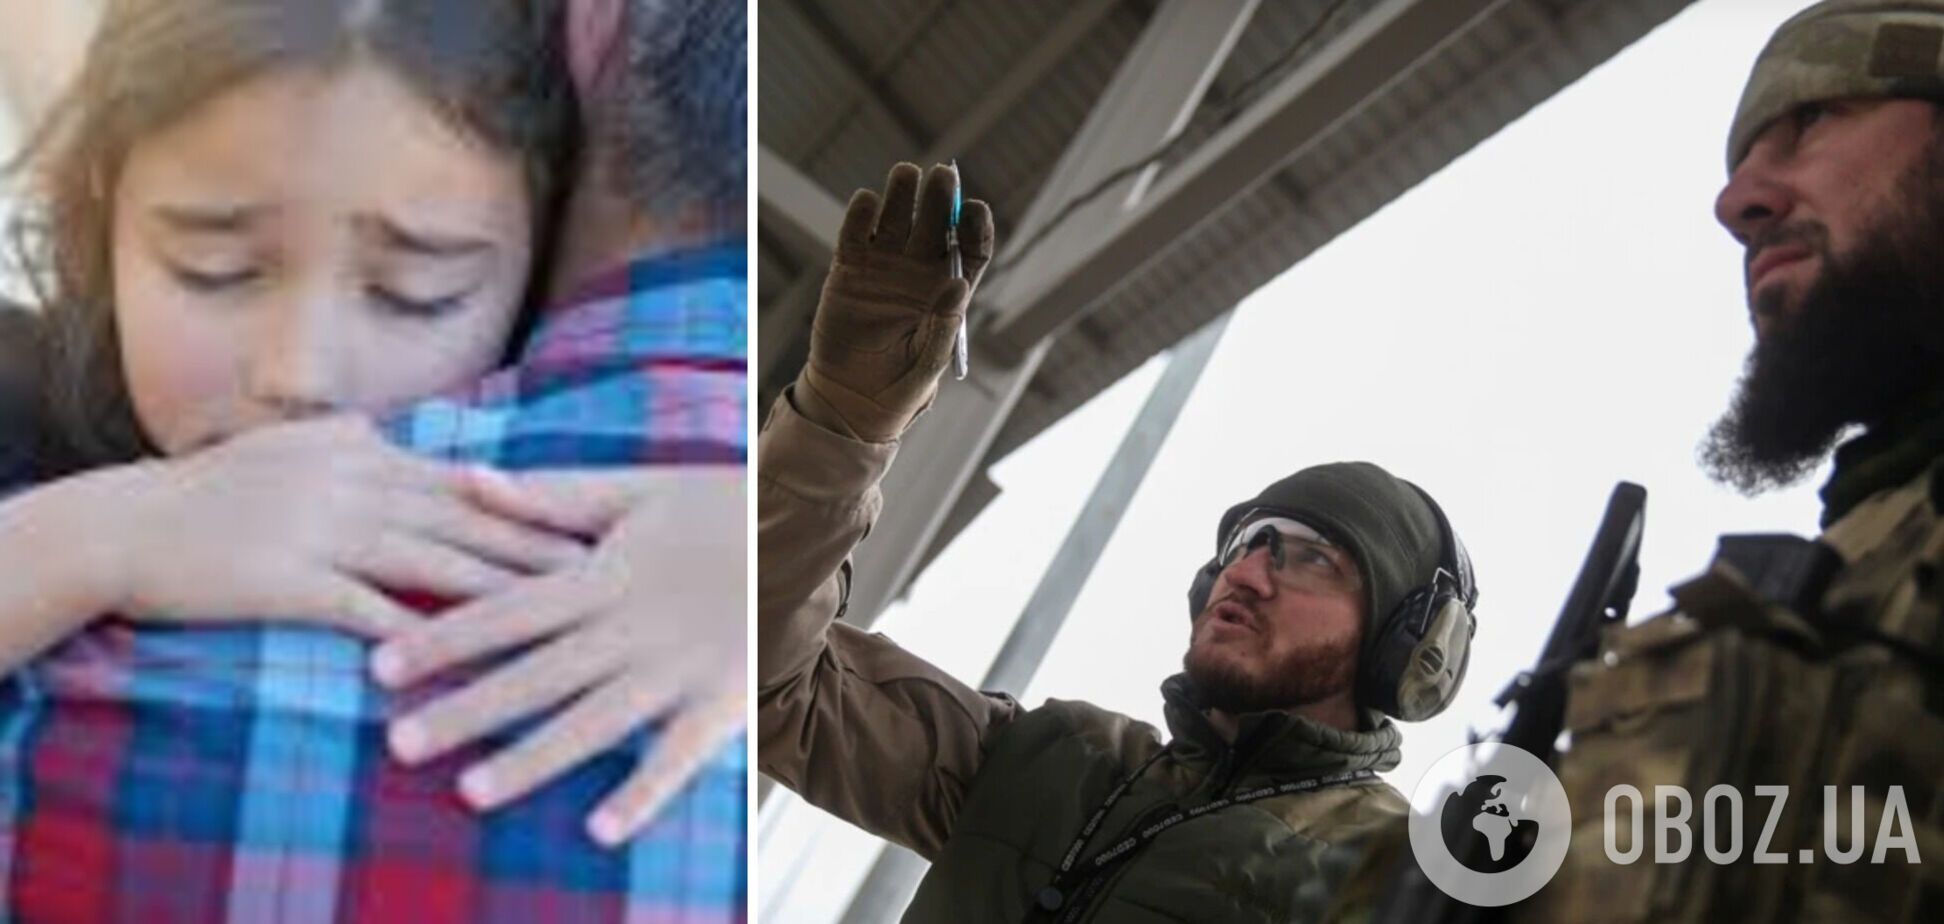 Кадыровцы стреляли по ногам 12-летней девочки ради развлечения: в сеть попал разговор о преступлениях оккупантов. Аудио